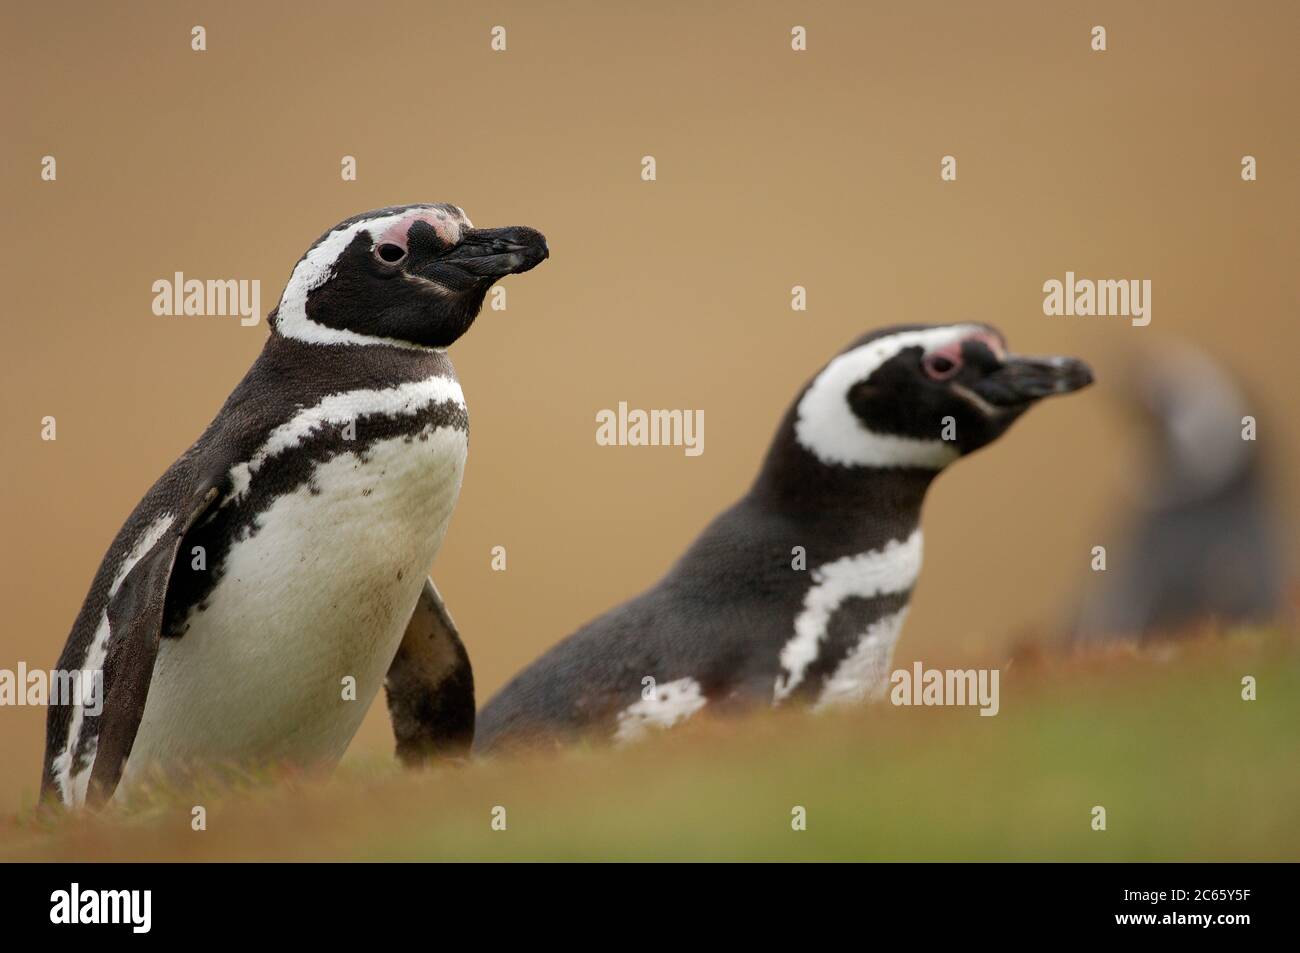 Mit einer Körpergröße von ca. 73 cm der Magellanic Pinguin (Spheniscus magellanicus) gehört zu den mittelgroßen Pinguinarten. Die beiden schwarzen Brustbänder sind charakteristisch und helfen, sie vom sehr ähnlichen Humboldt-Pinguin zu unterscheiden, der nur eine solche Bande hat. Stockfoto